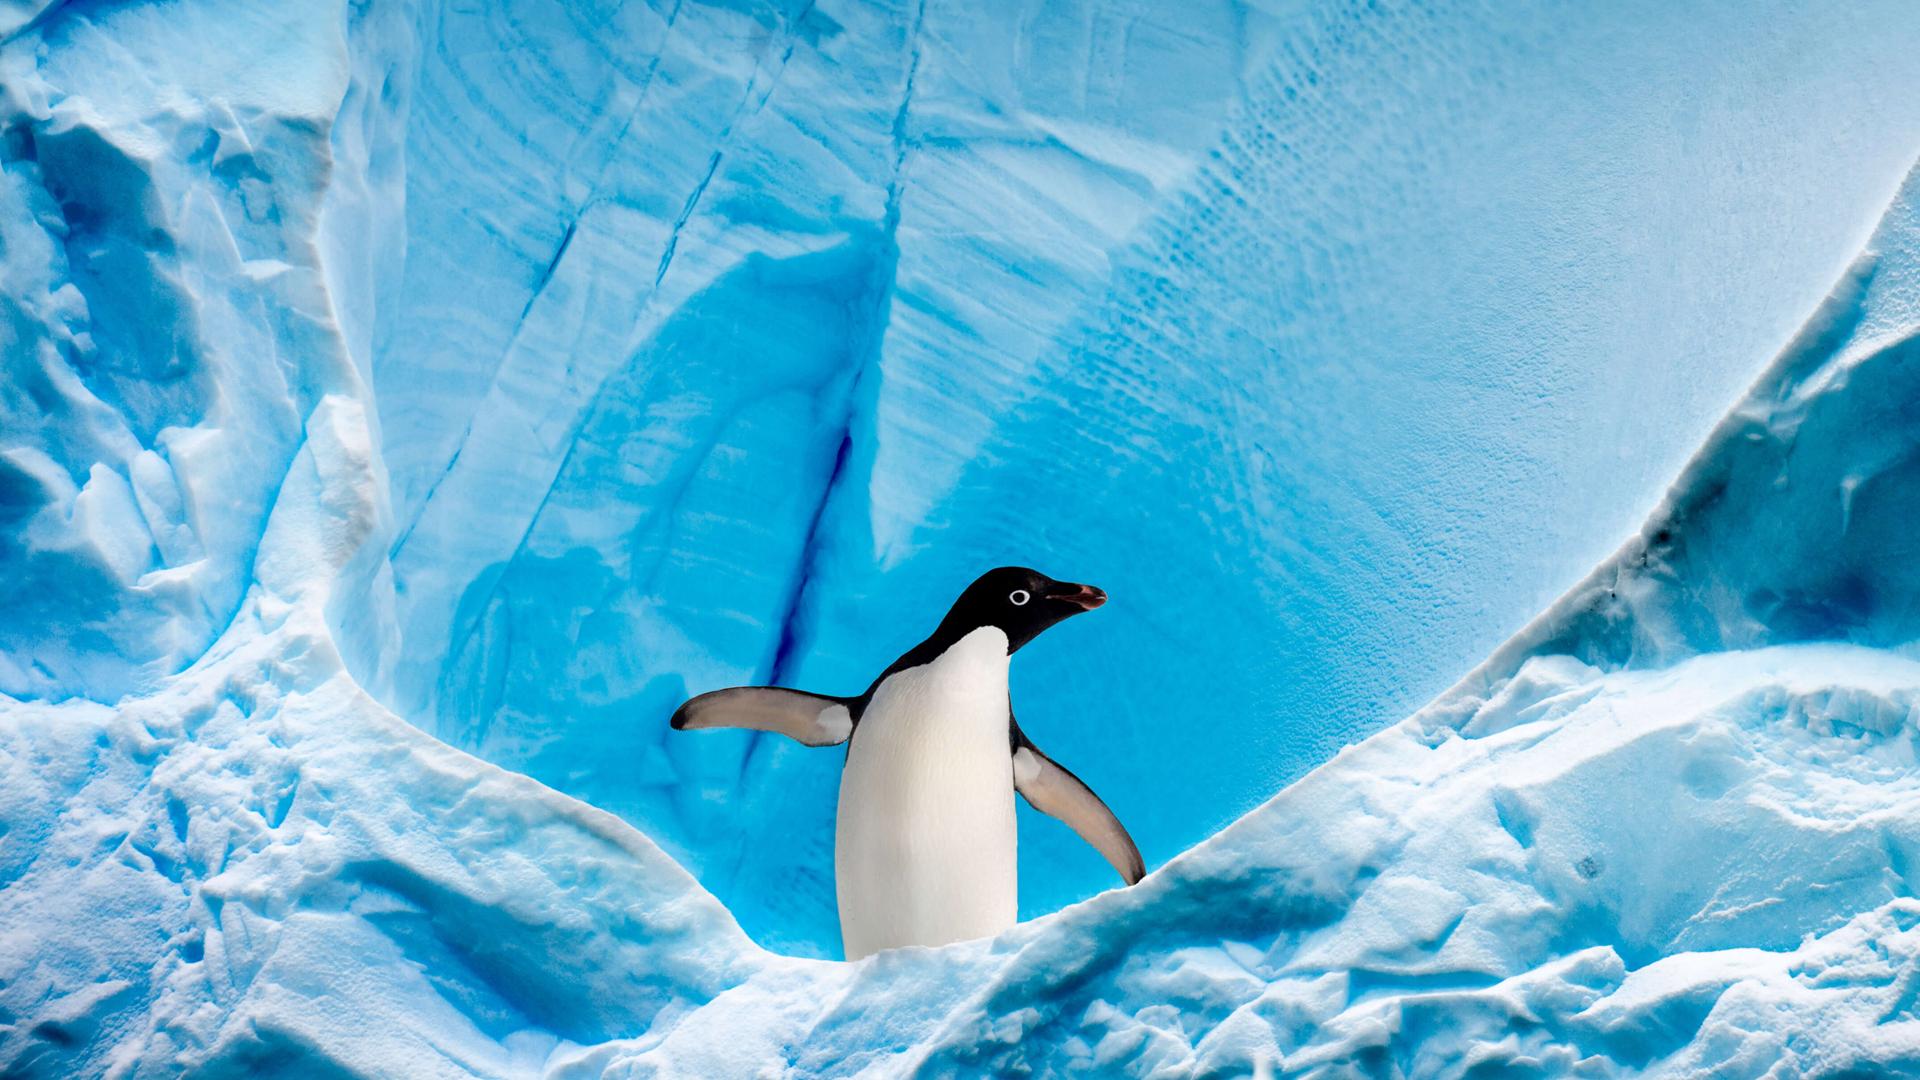 企鹅 蓝色 水 动物 4K壁纸壁纸(动物静态壁纸) - 静态壁纸下载 - 元气壁纸